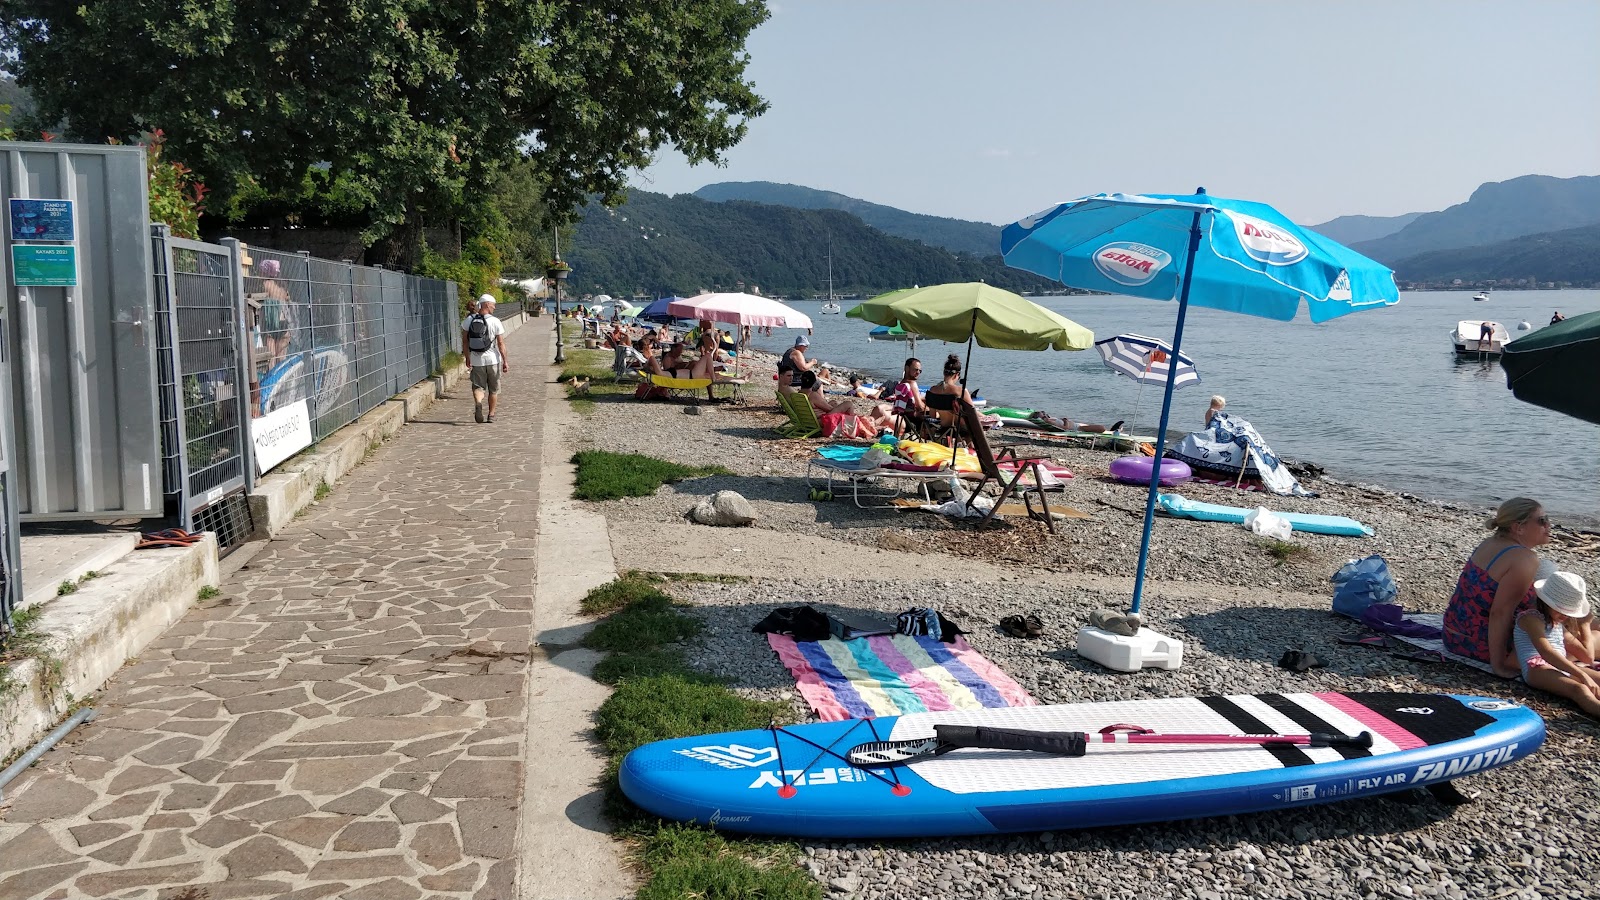 Foto von Spiaggia Pinzone - guter haustierfreundlicher Ort für den Urlaub